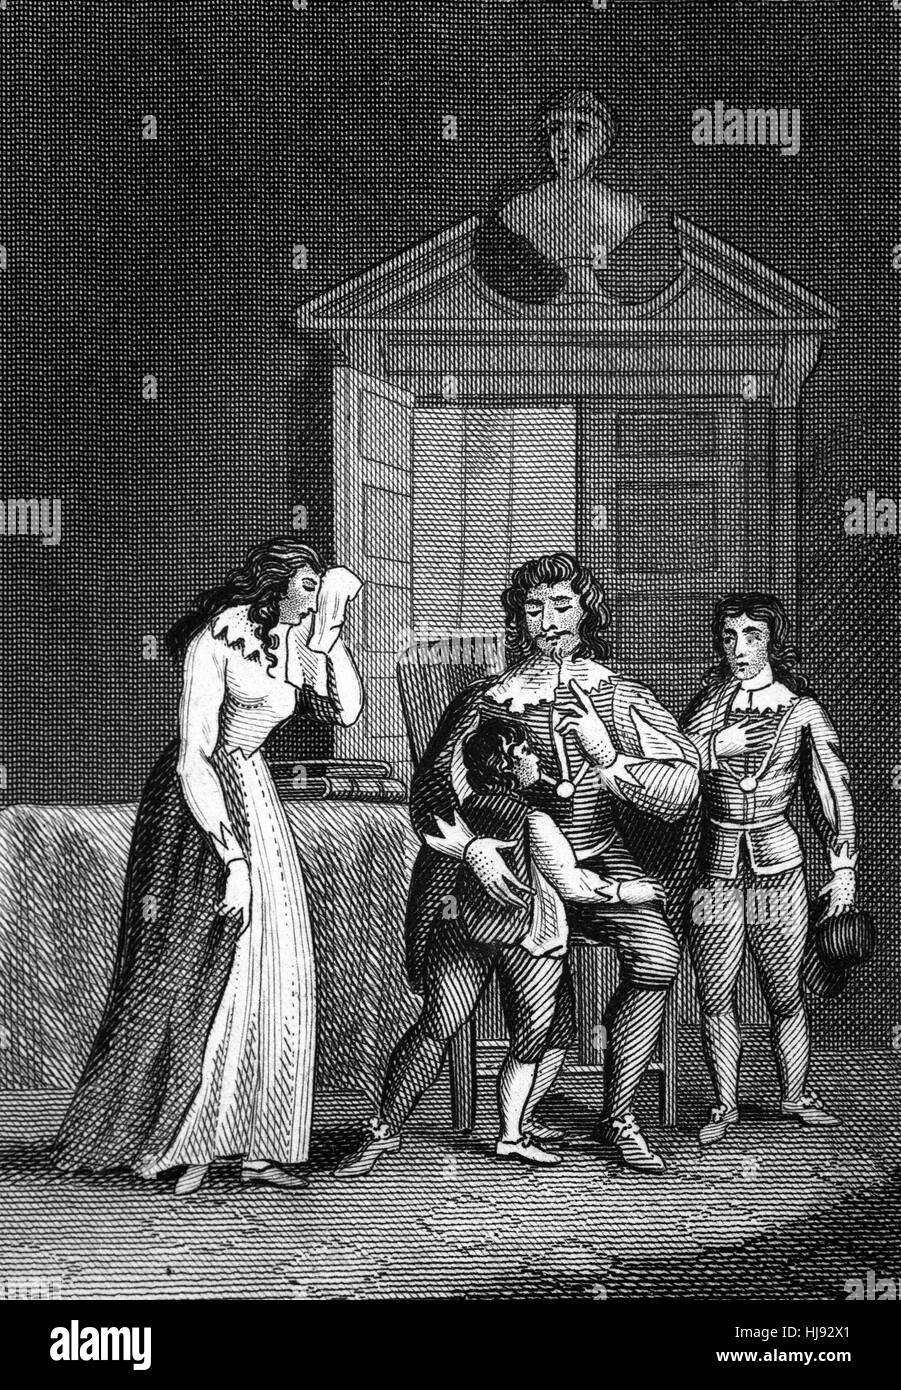 Die Enthauptung des Königs Charles ich (1600 – 1649) für Samstag, 30. Januar 1649 geplant war. Zwei seiner Kinder durften ihn am 29 Januar besuchen und er nahm sie einen tränenreichen Abschied. Nach seinem Tod blieb sie in England unter der Kontrolle der Parlamentarier. Stockfoto